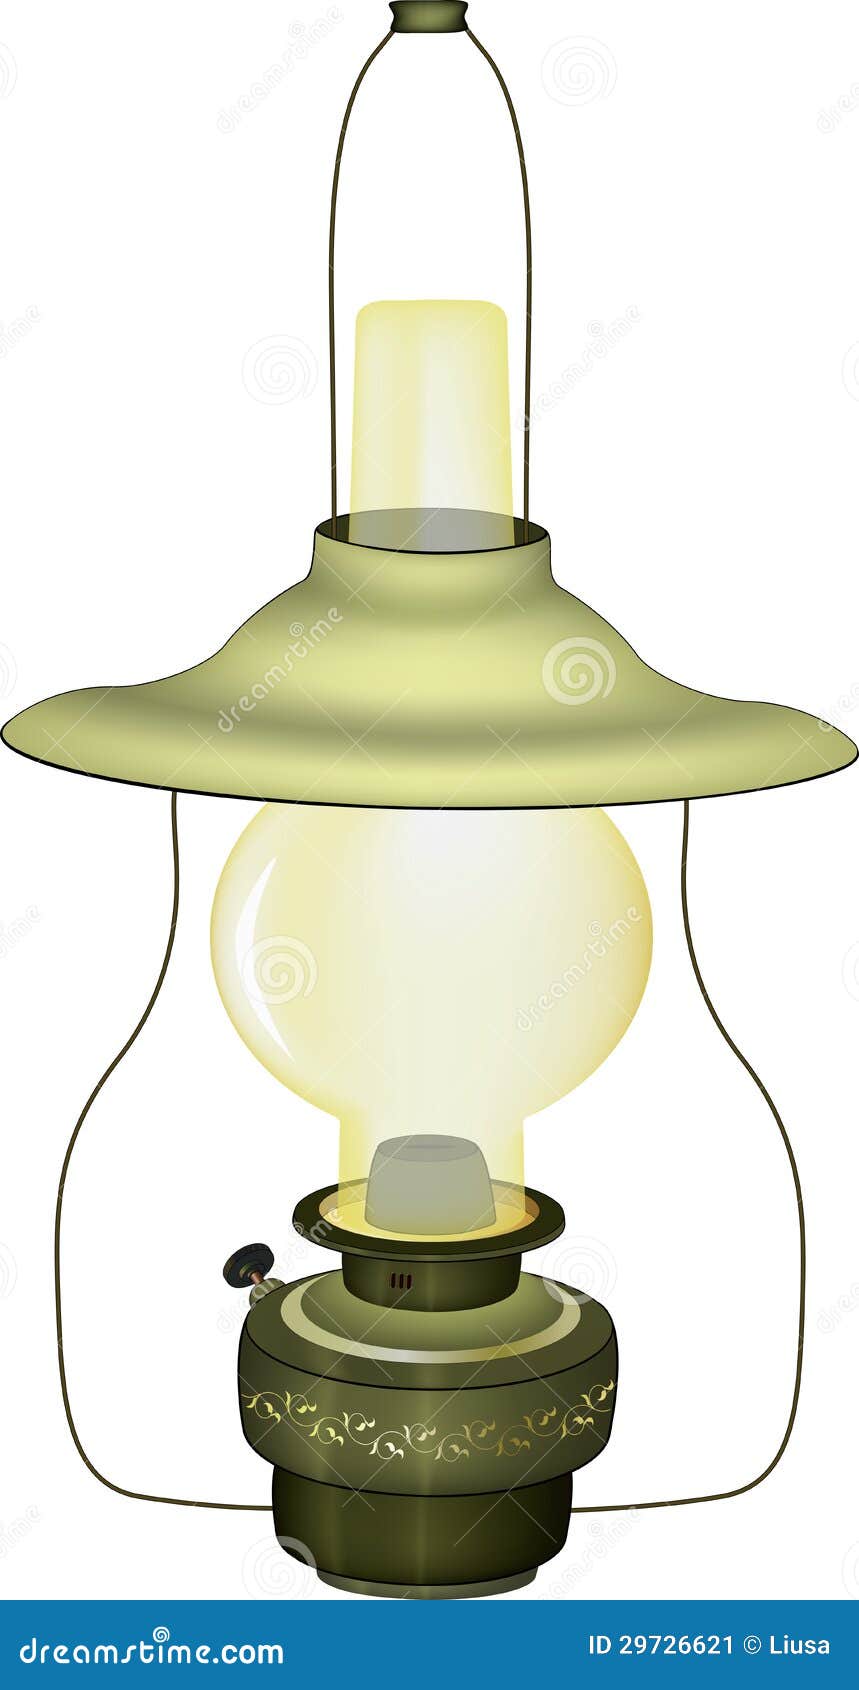 Stara zielona lampa. Antyczna zielona nafciana lampa z ornamentem